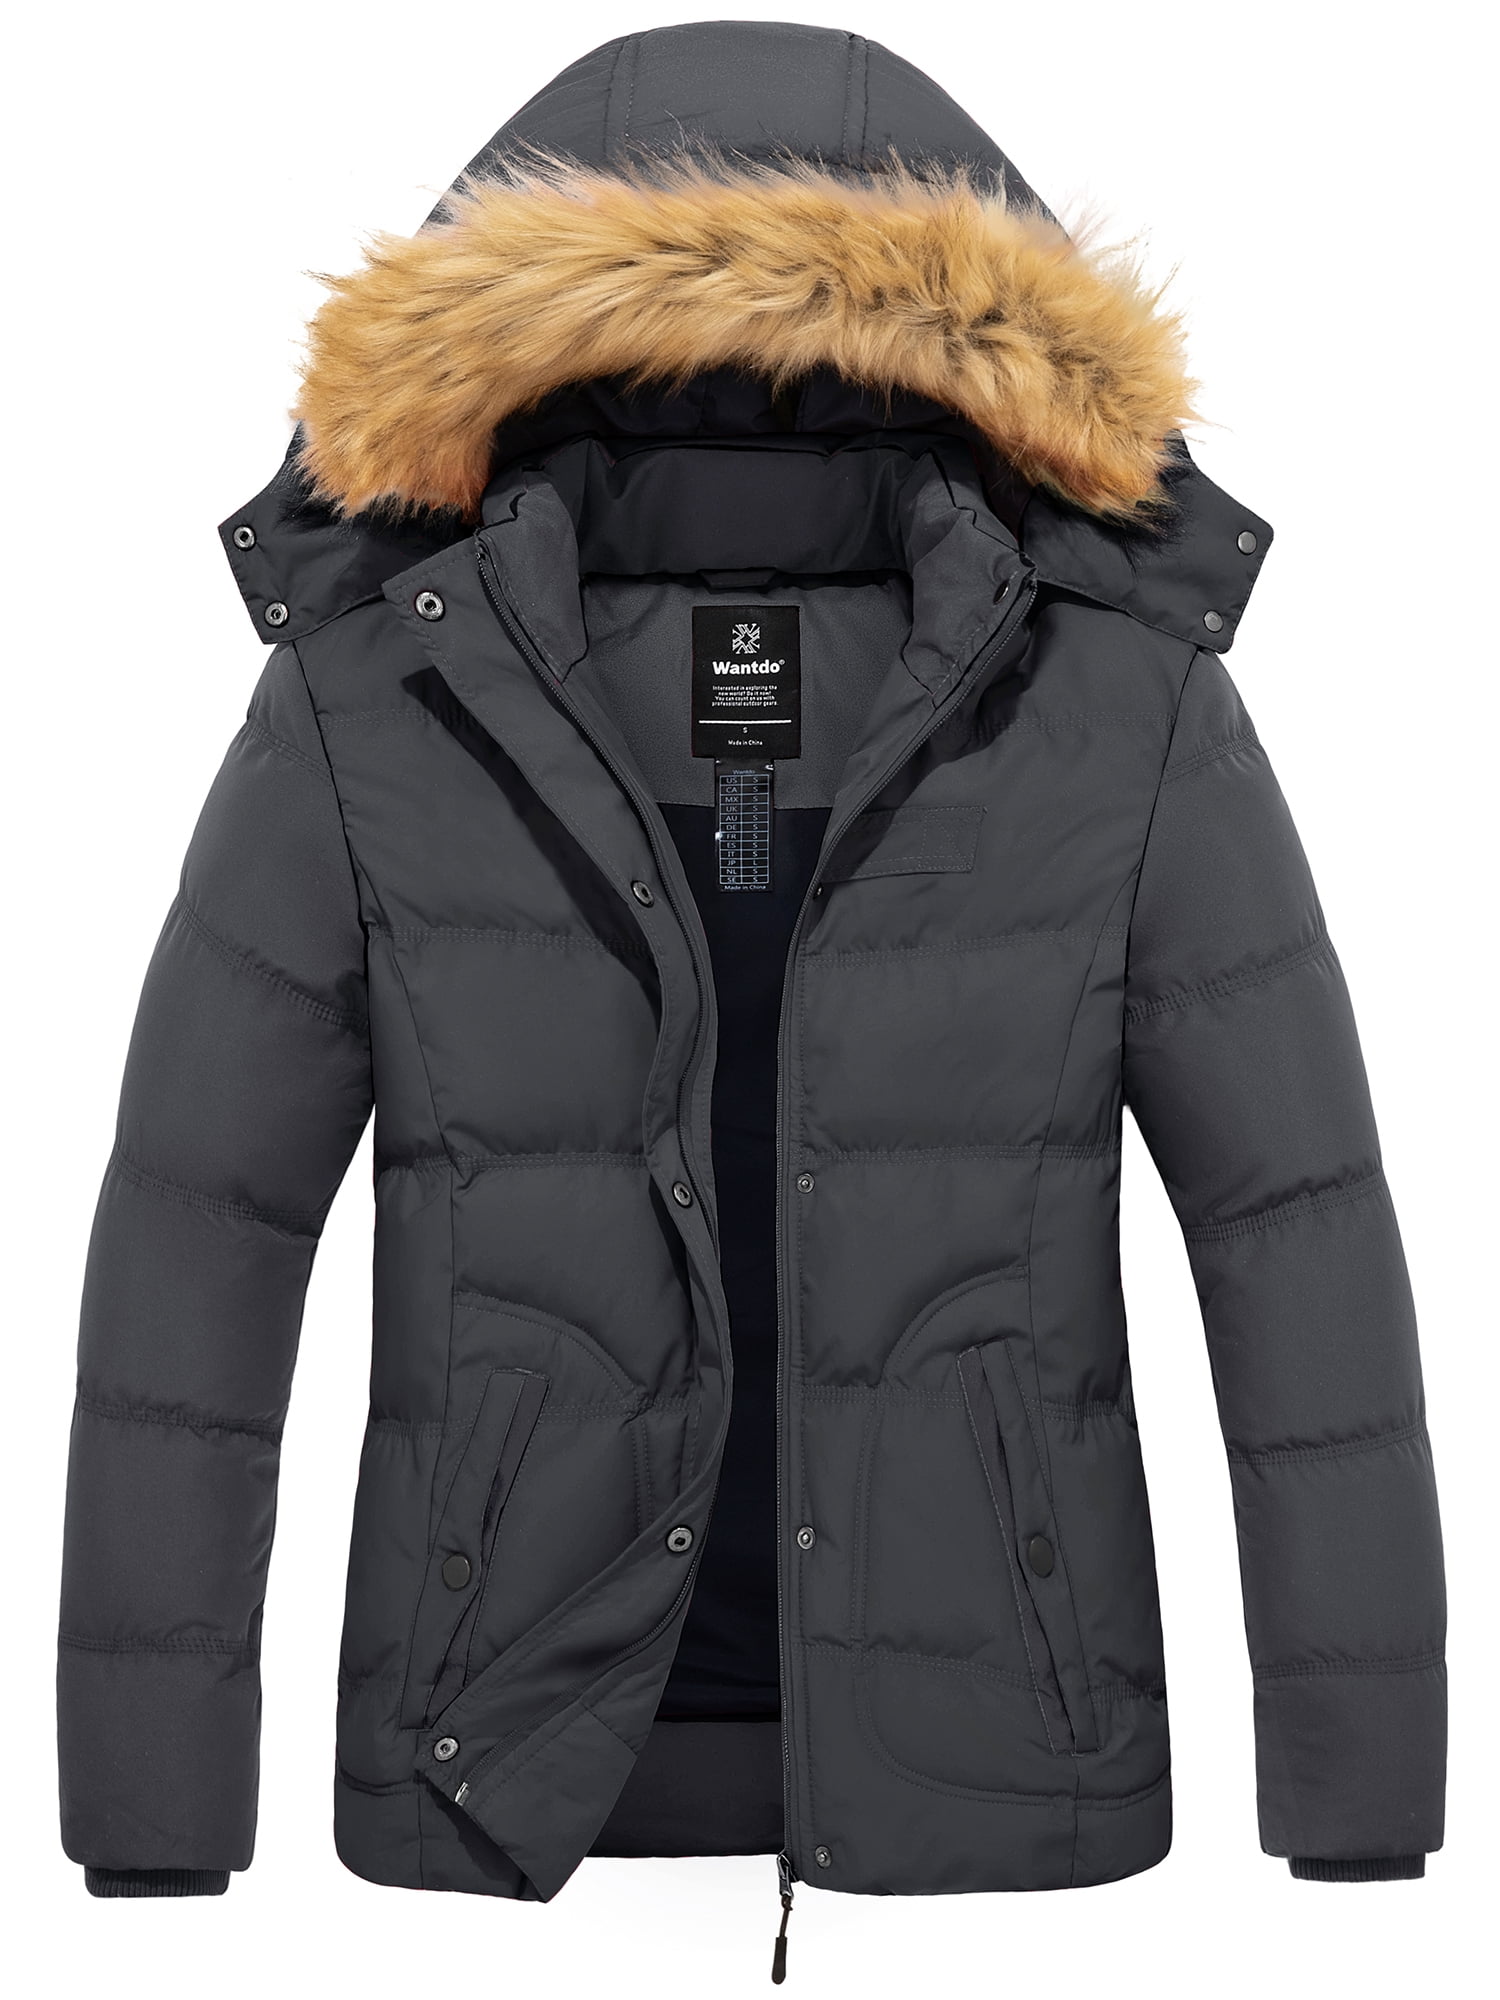 Wantdo Women\'s Puffer Dark Jacket Gray L Jacket Coats Zip-up Winter Waterproof Quilted